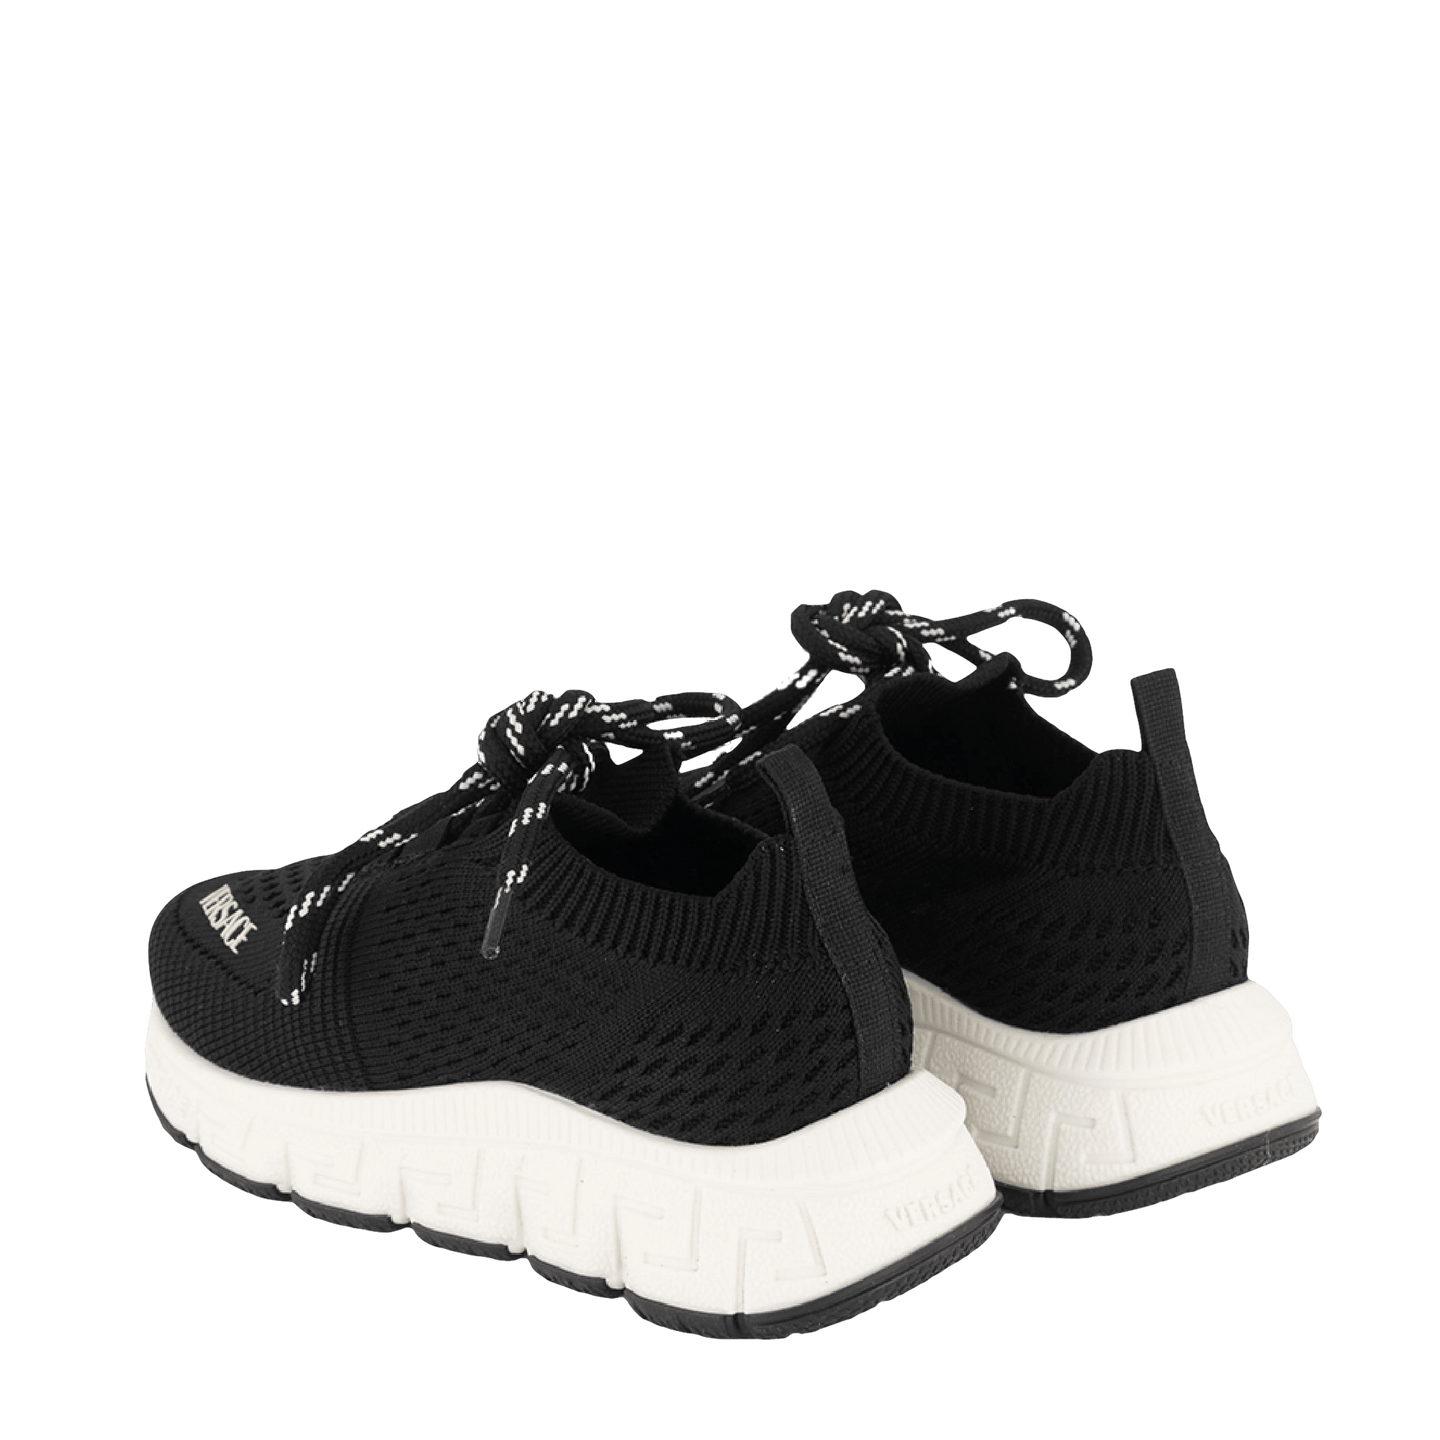 Versace Kinder Unisex Sneakers Zwart 27